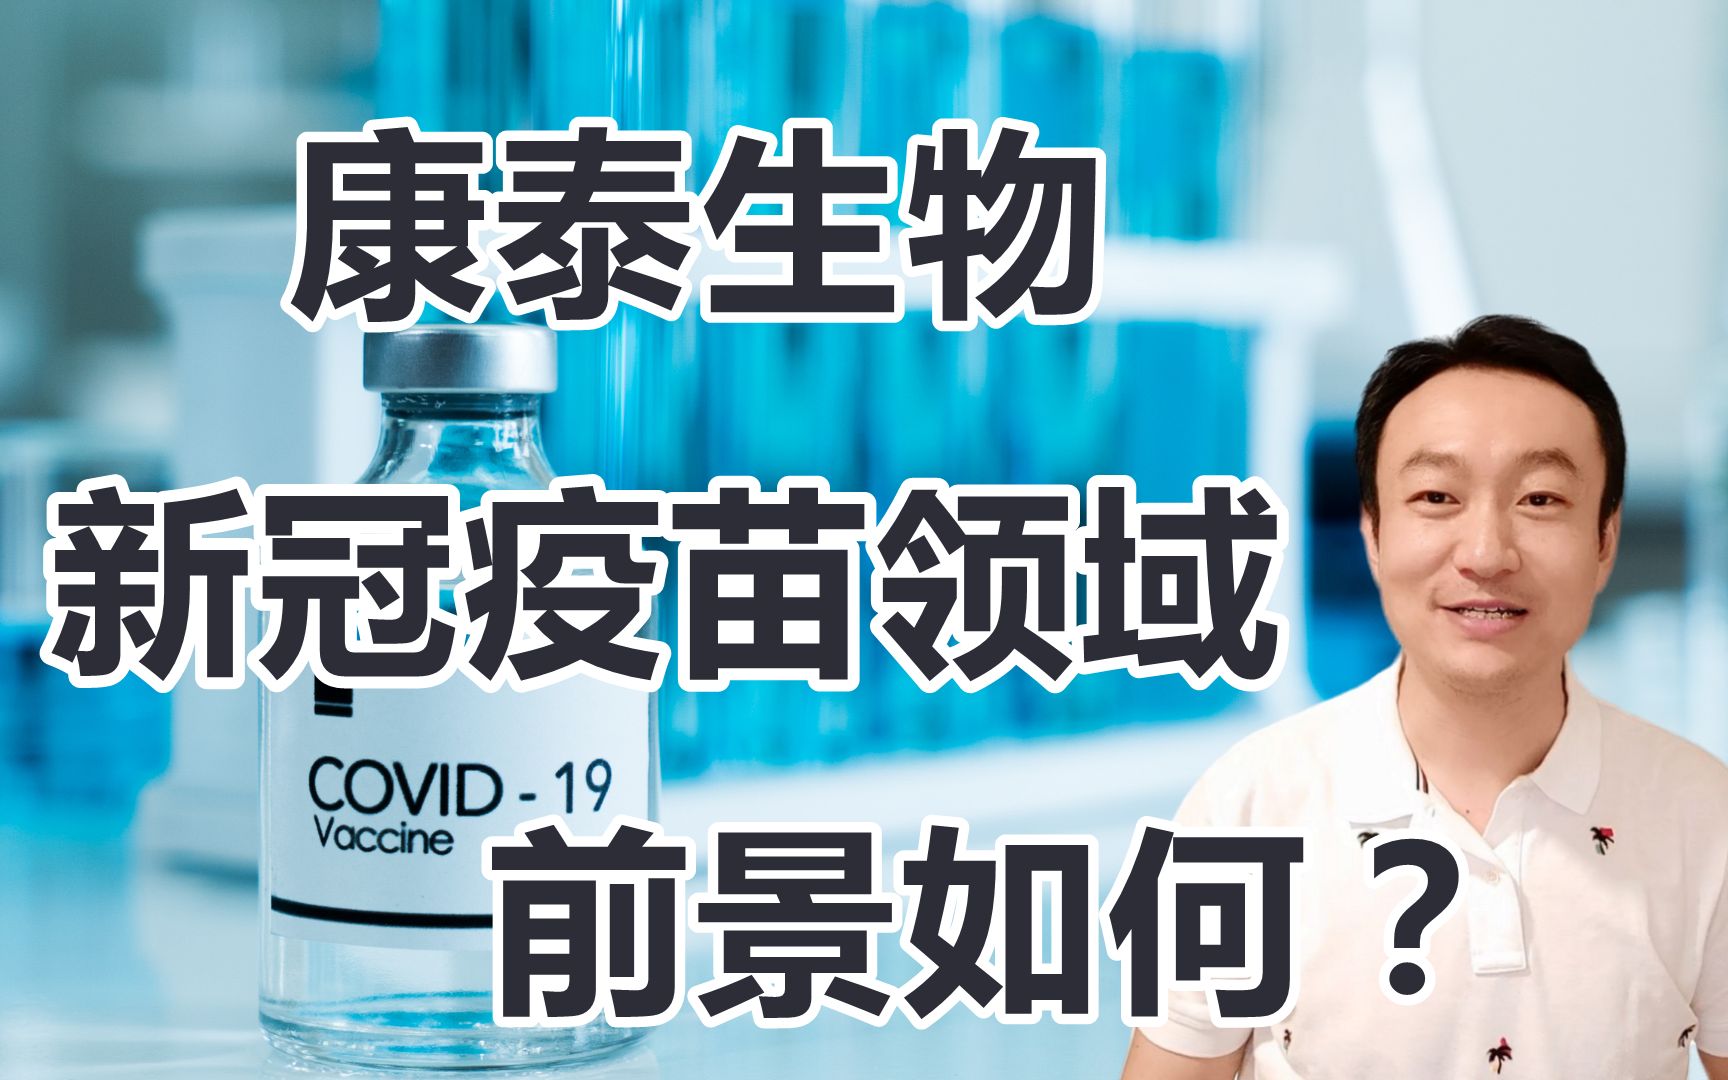 分析下深圳康泰这家公司虽然刚刚上市第六款新冠疫苗但是与阿斯利康的